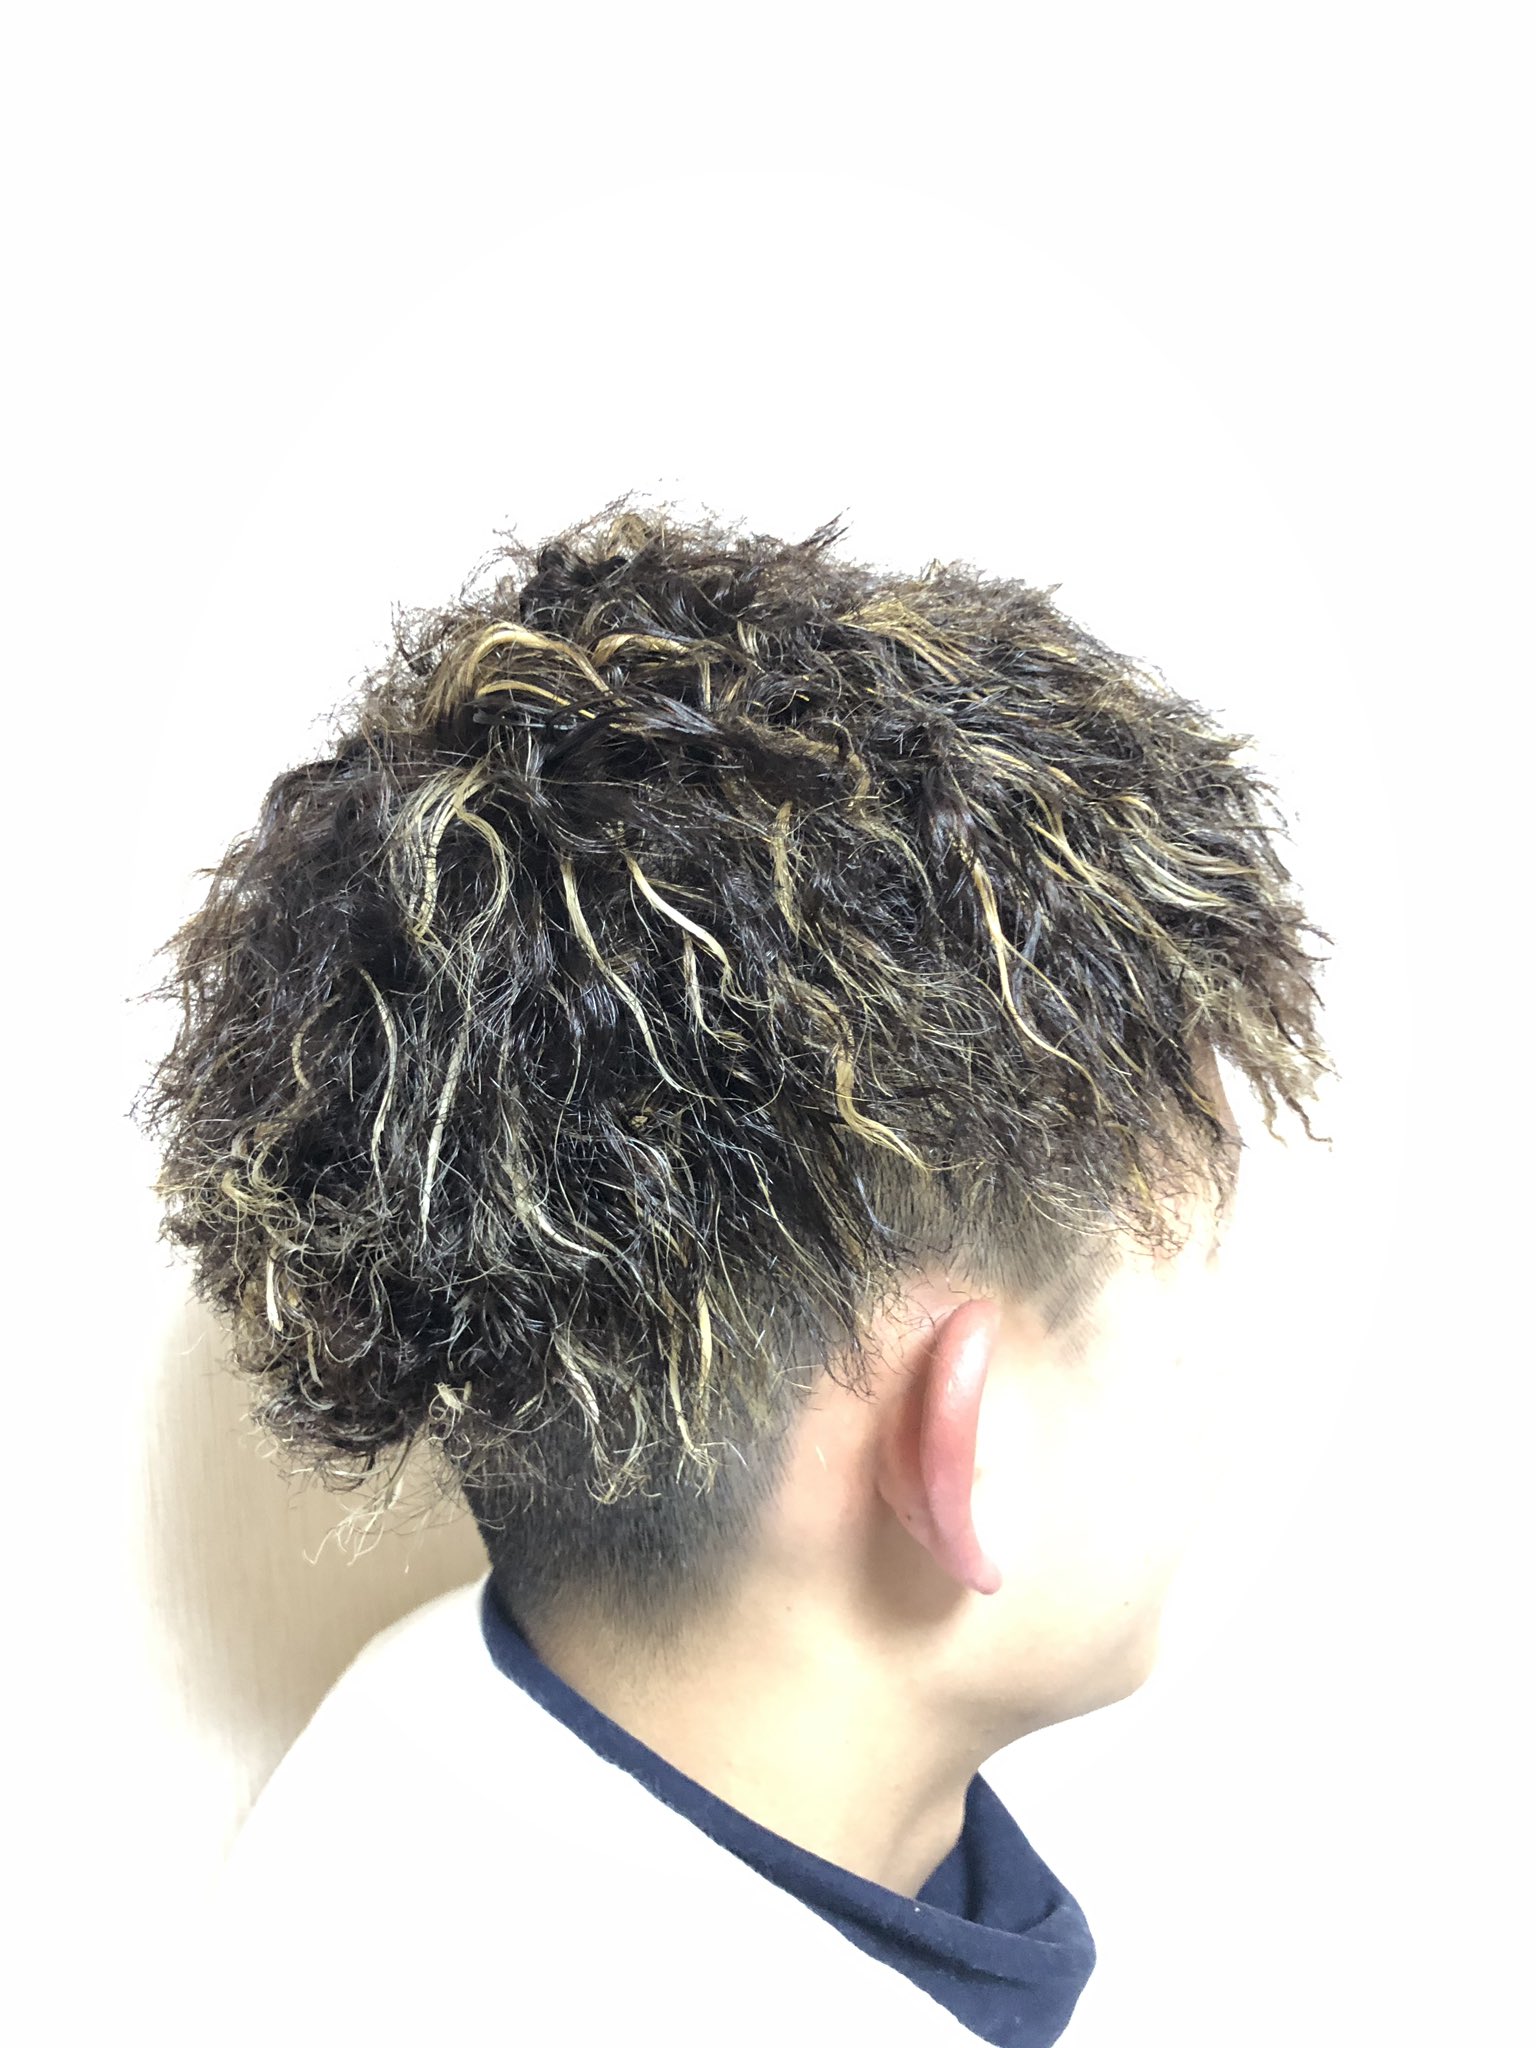 Ren ツイスト 金メッシュ メンズにこのスタイルめちゃ人気 Yoshikiありがとう 美容学生 美容師 Hair Haircolor Highlight 派手髪 ハイトーンカラー Hairart 特殊系 ツイストパーマ Twist メッシュカラー Hoyu ホーユー ホワイト